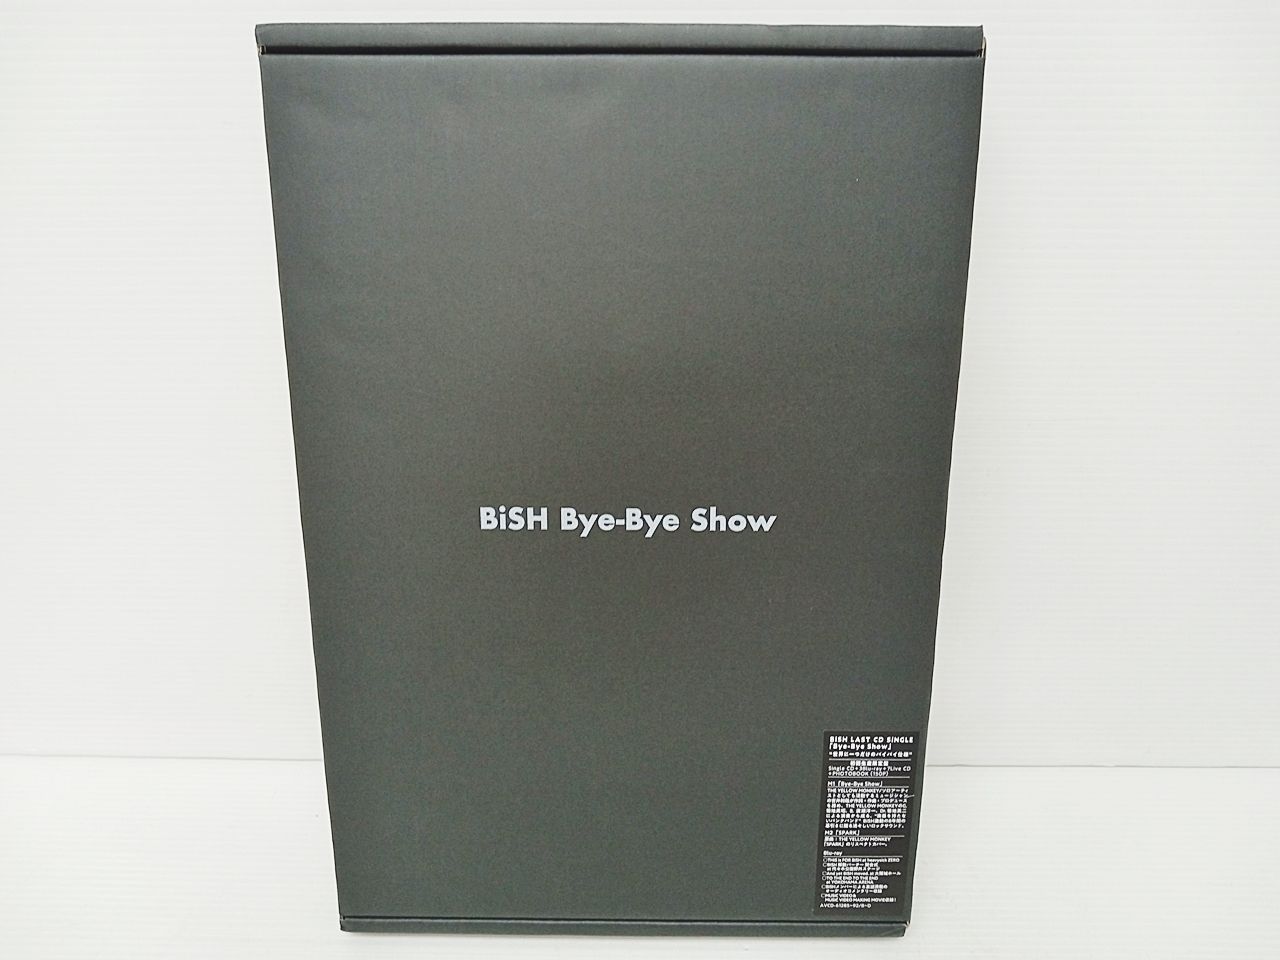 BiSH Bye-Bye Show 初回生産限定盤 世界に一つだけのバイバイ仕様 CD+ 